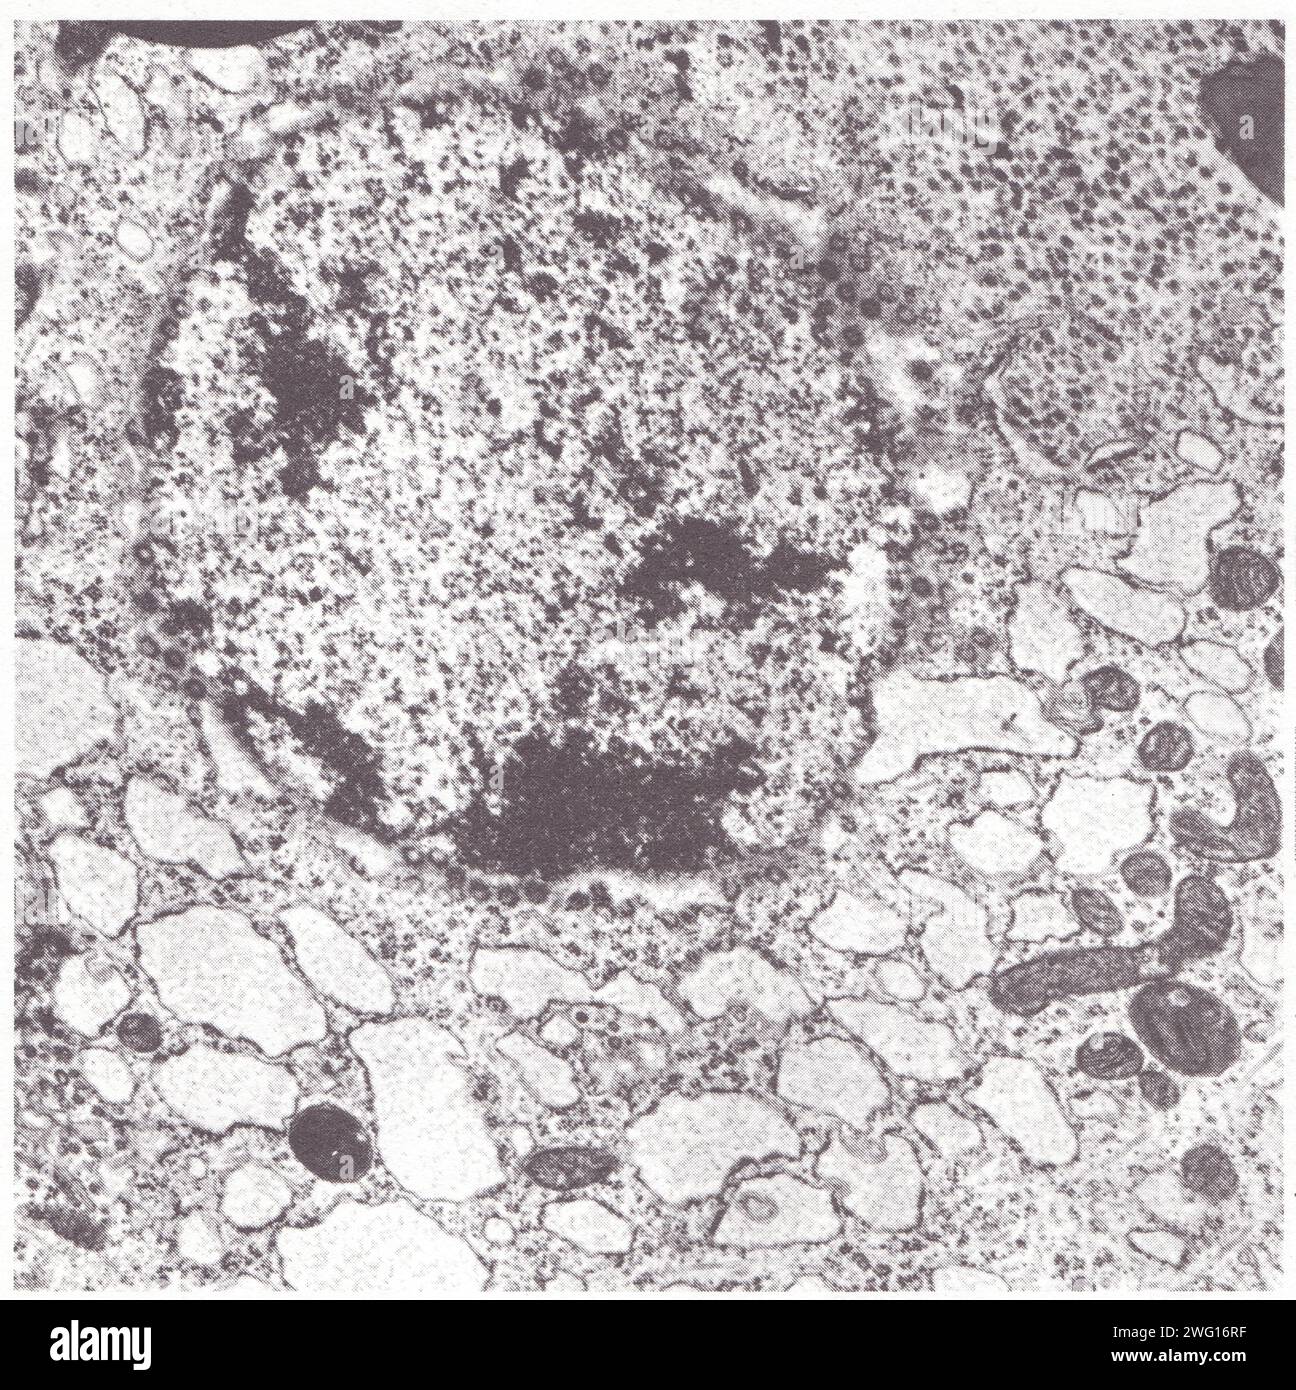 Structure d'ensemble d'une cellule glande de mue du Criquet. Stockfoto